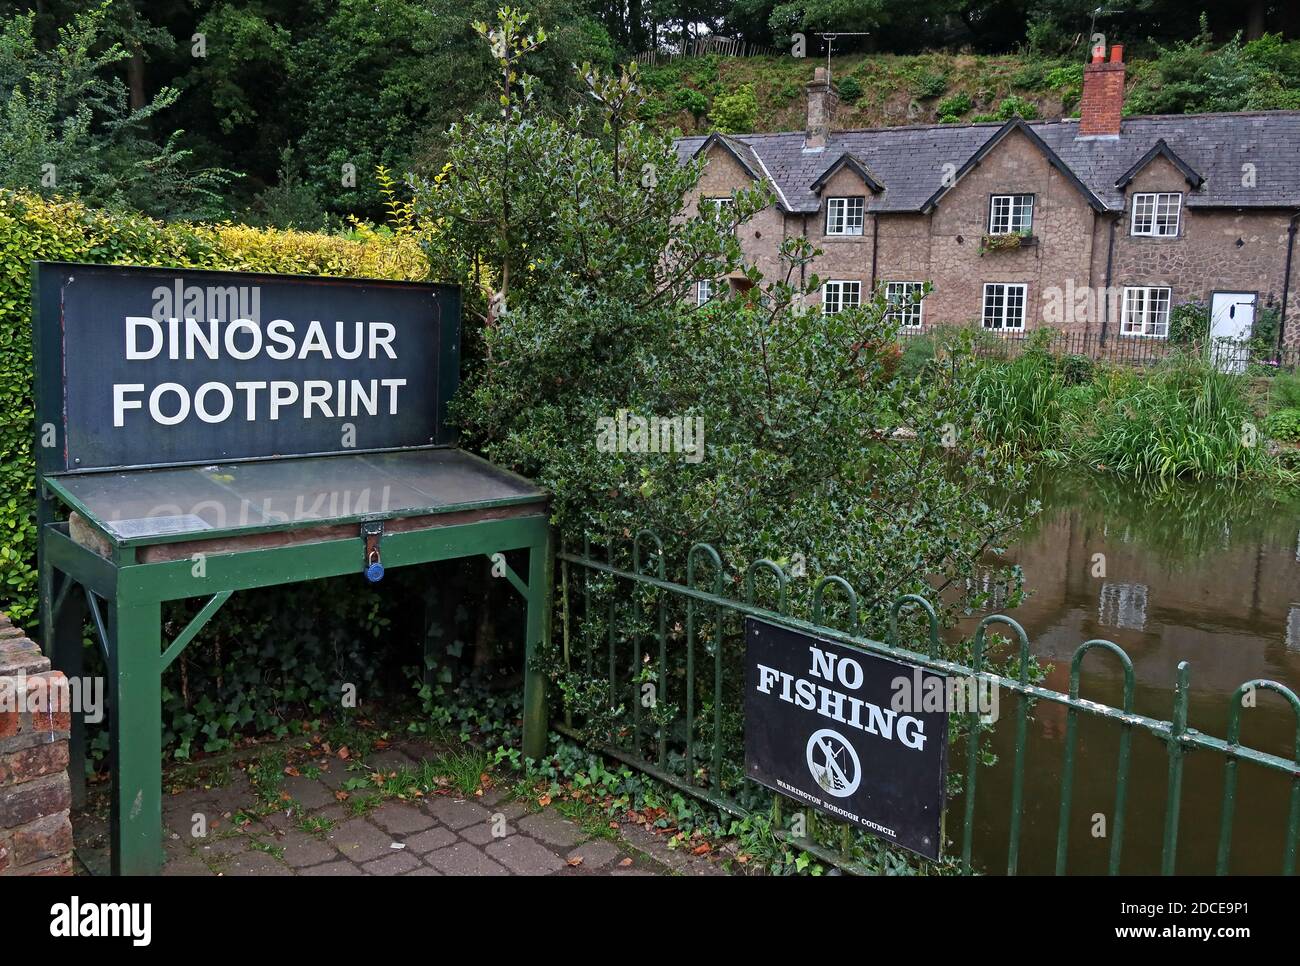 Empreinte de dinosaure Lymm, empreinte de stockage de Chirotherium dans le grès, village de Lymm, Warrington, Cheshire, Angleterre, Royaume-Uni Banque D'Images